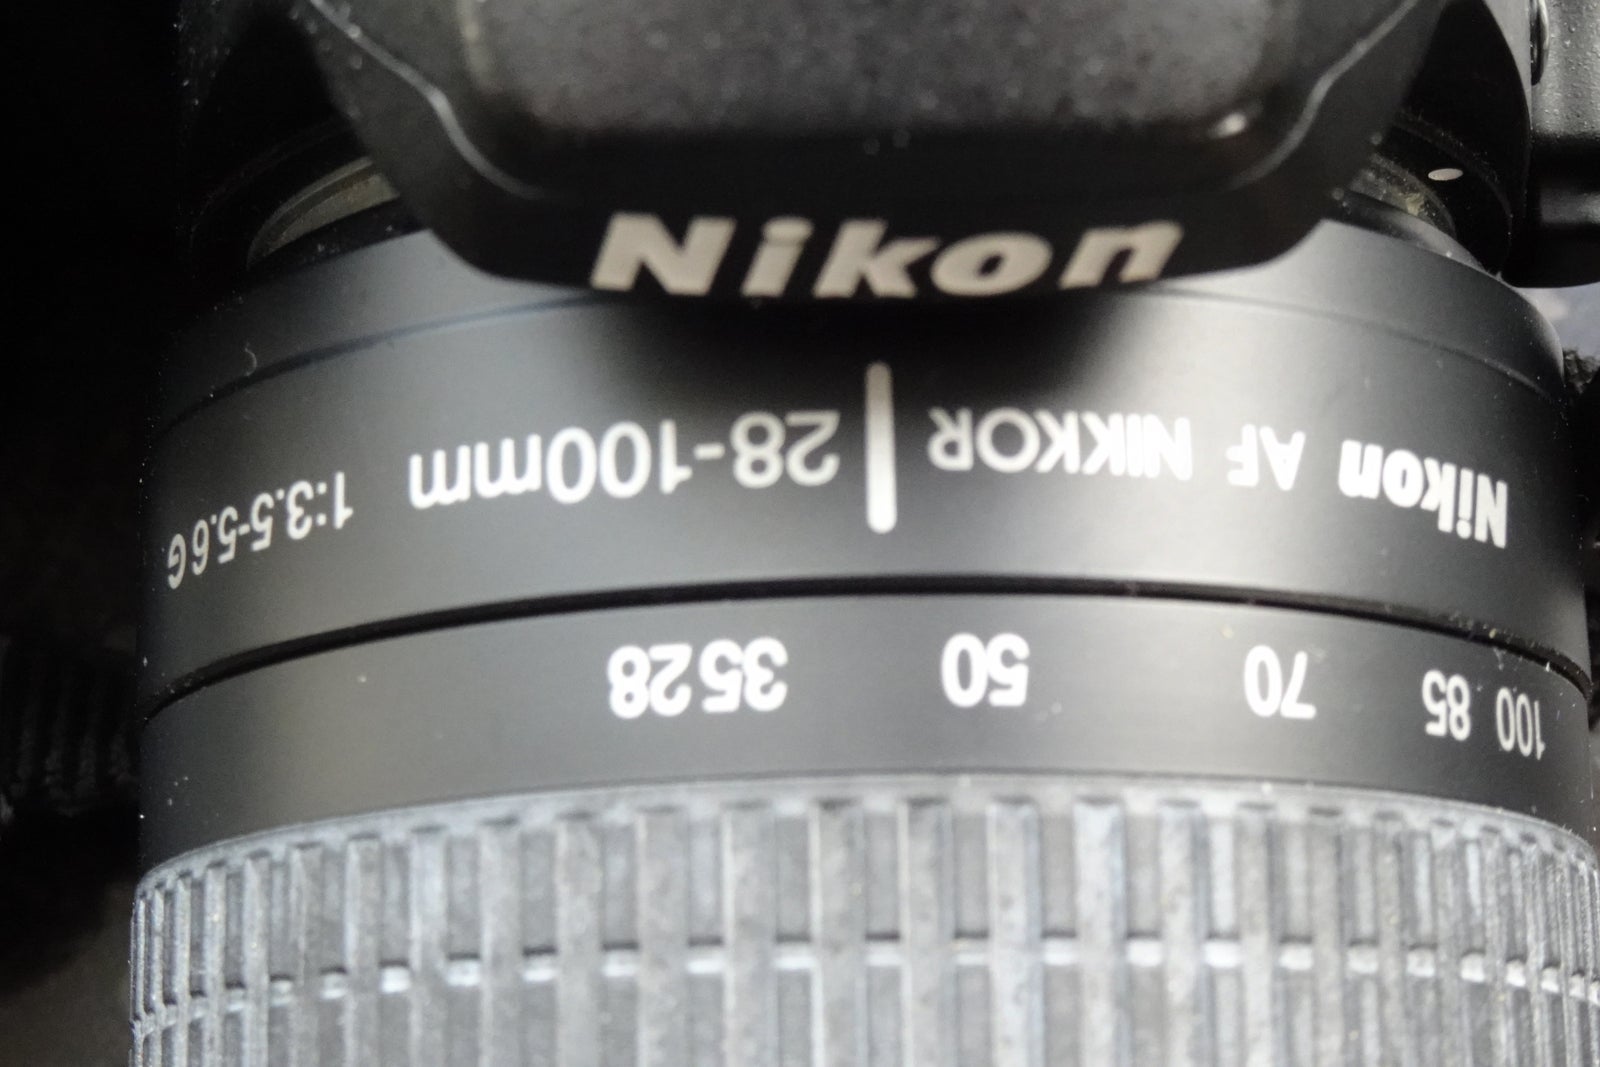 Nikon D40 X, spejlrefleks, Perfekt